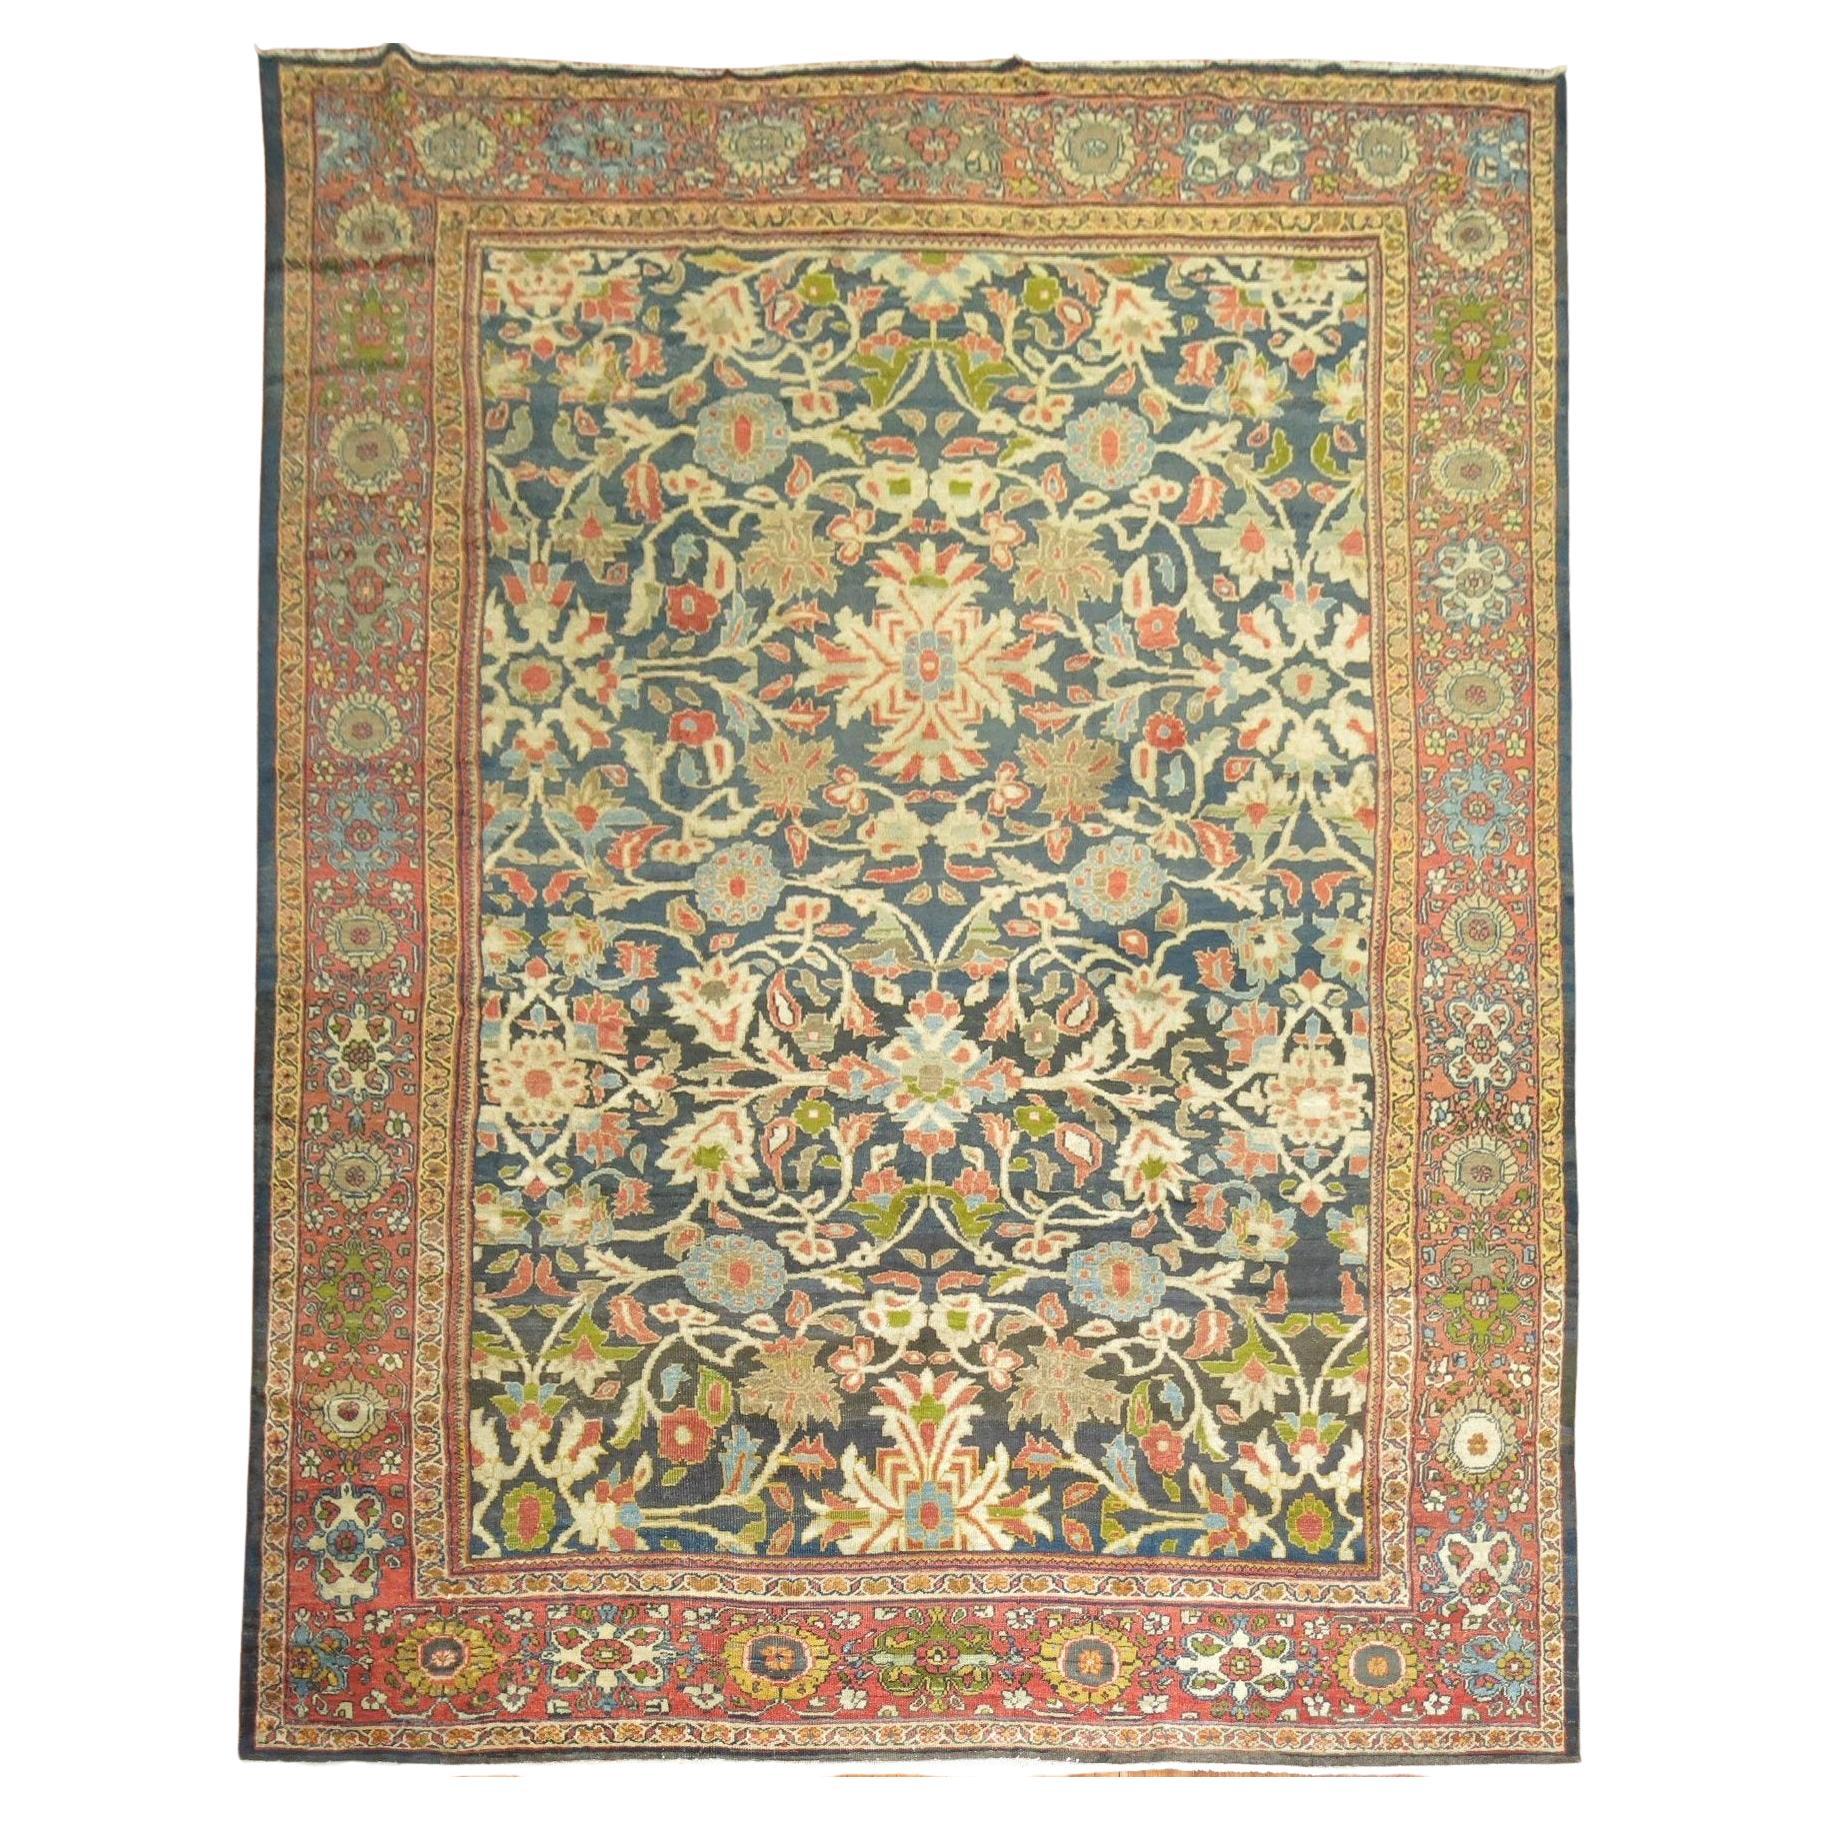 Zabihi-Kollektion Sultanabad-Teppich des 20. Jahrhunderts, Ziegler und Co. zugeschrieben